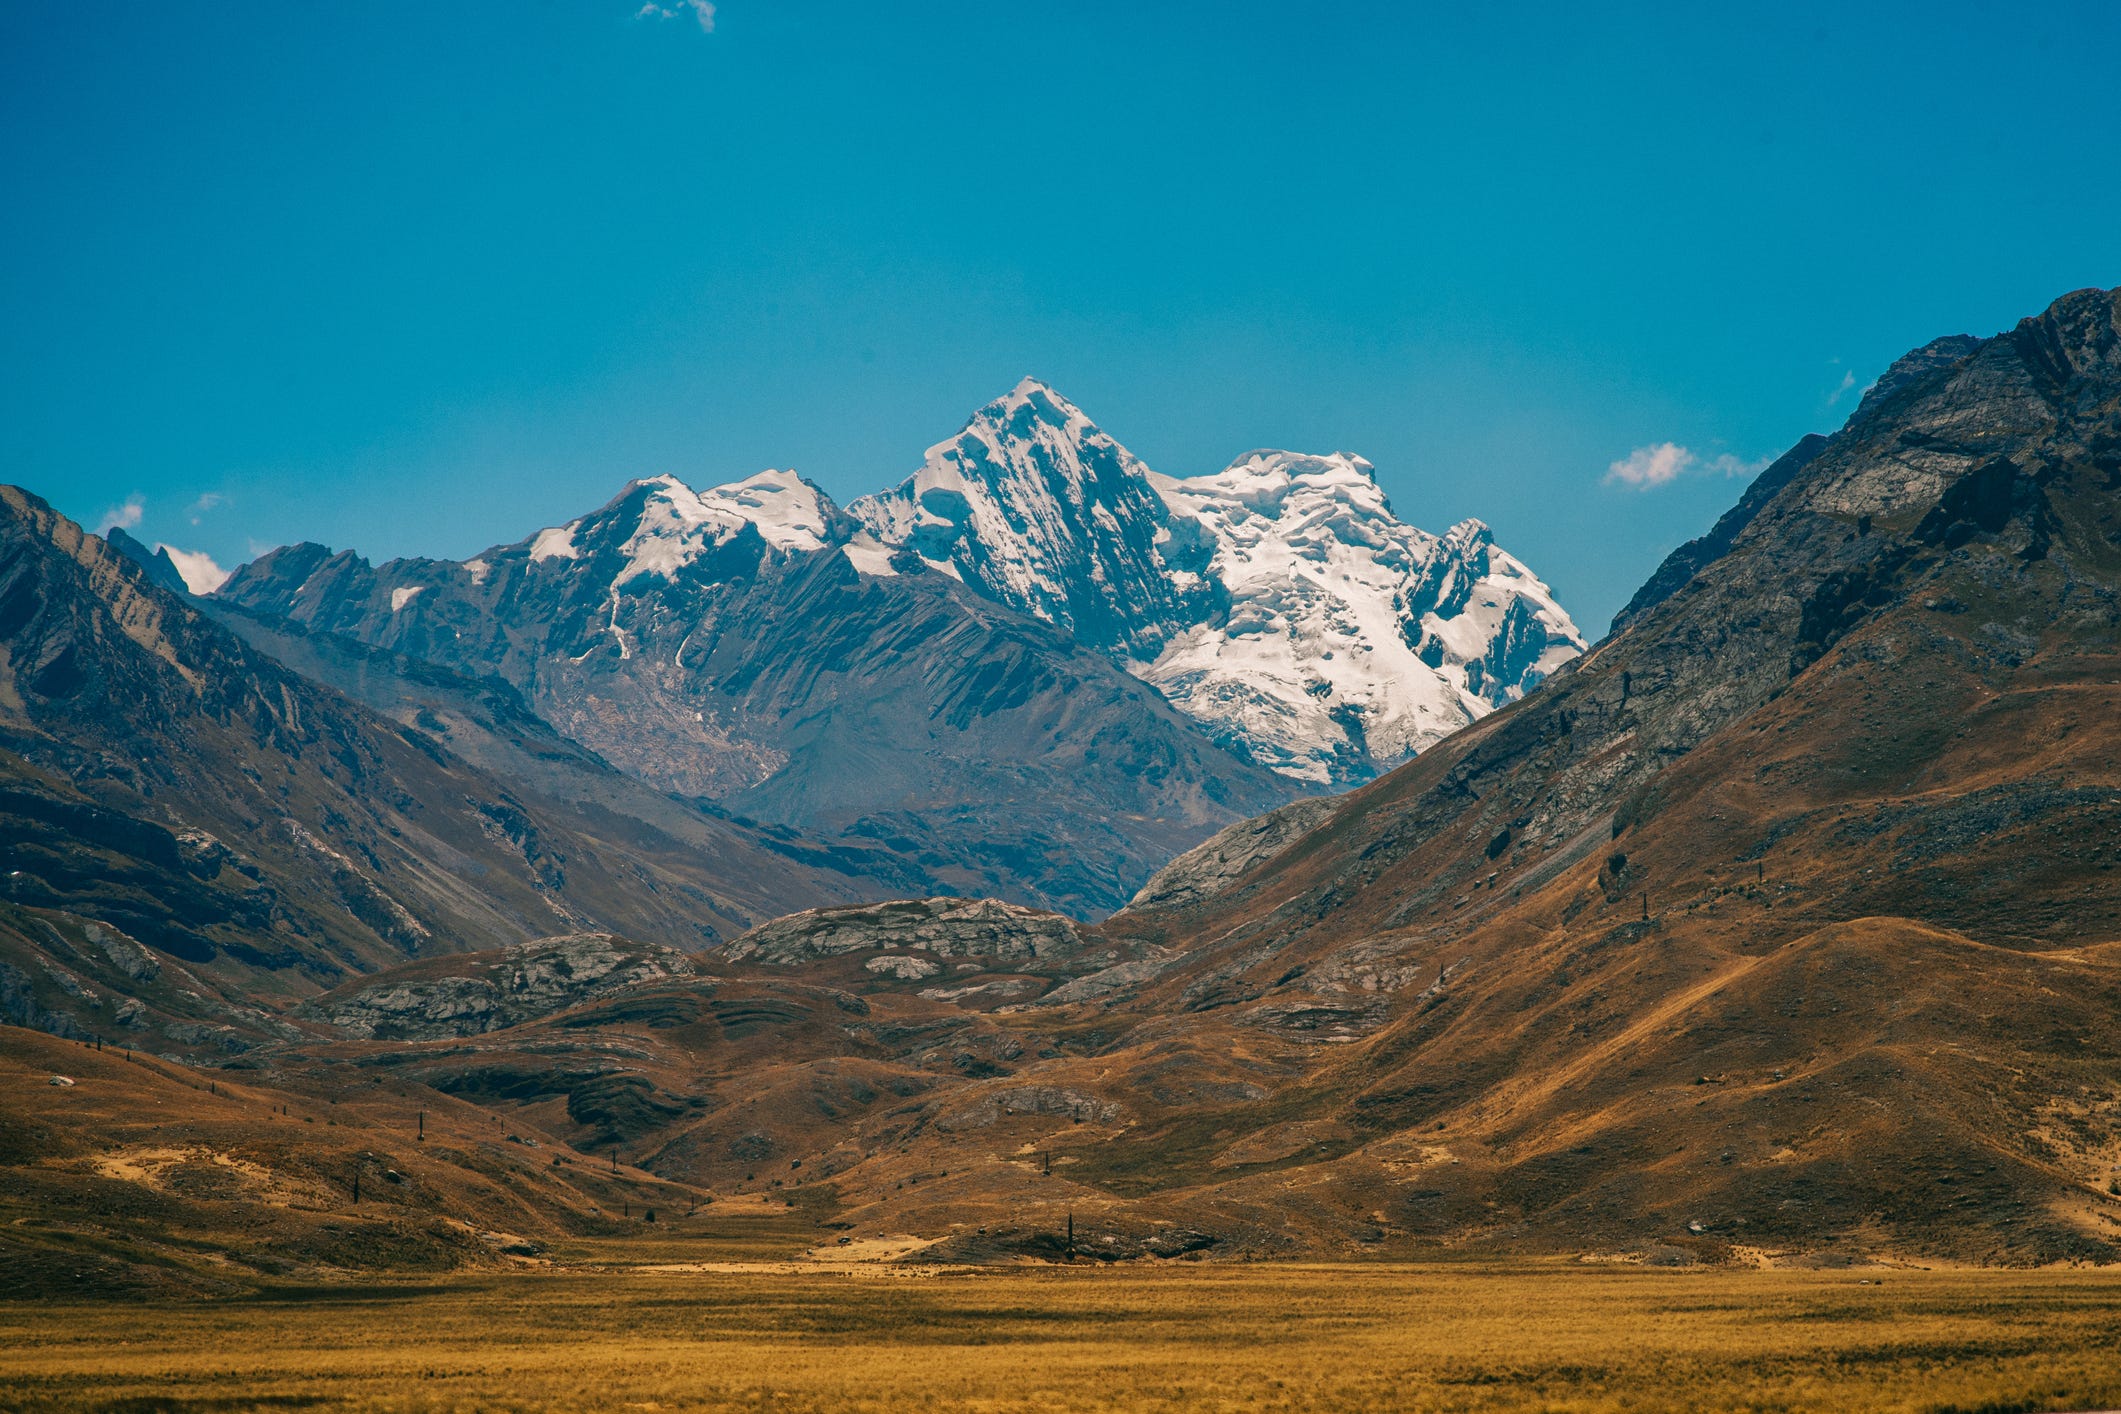 Ein Foto des trockenen Tals vor der Cordillera blanca, einem eiszeitlichen Teil der Anden in Peru.